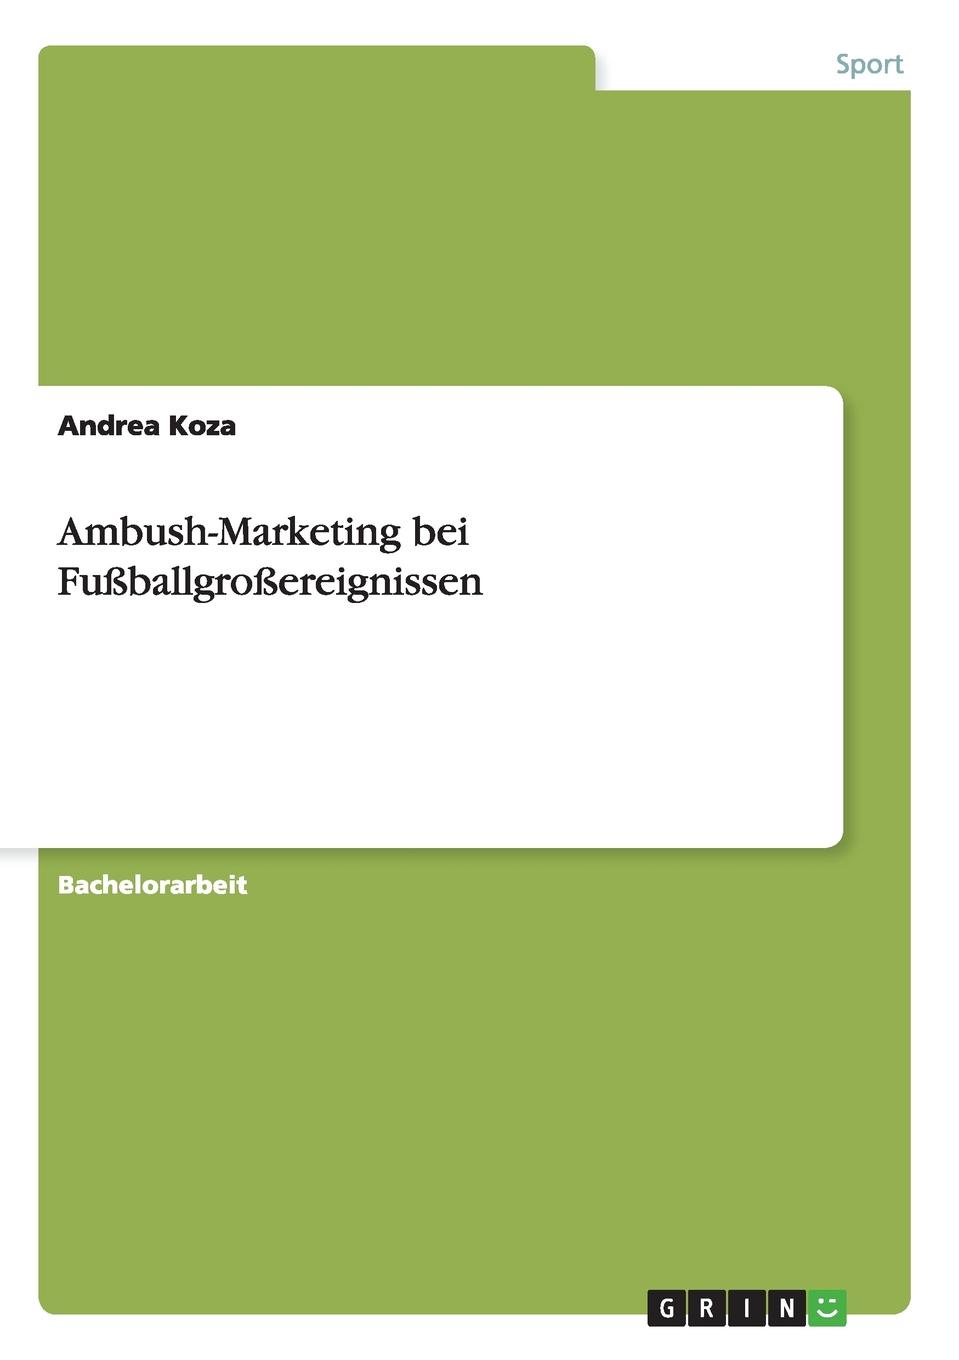 Andrea Koza Ambush-Marketing bei Fussballgrossereignissen